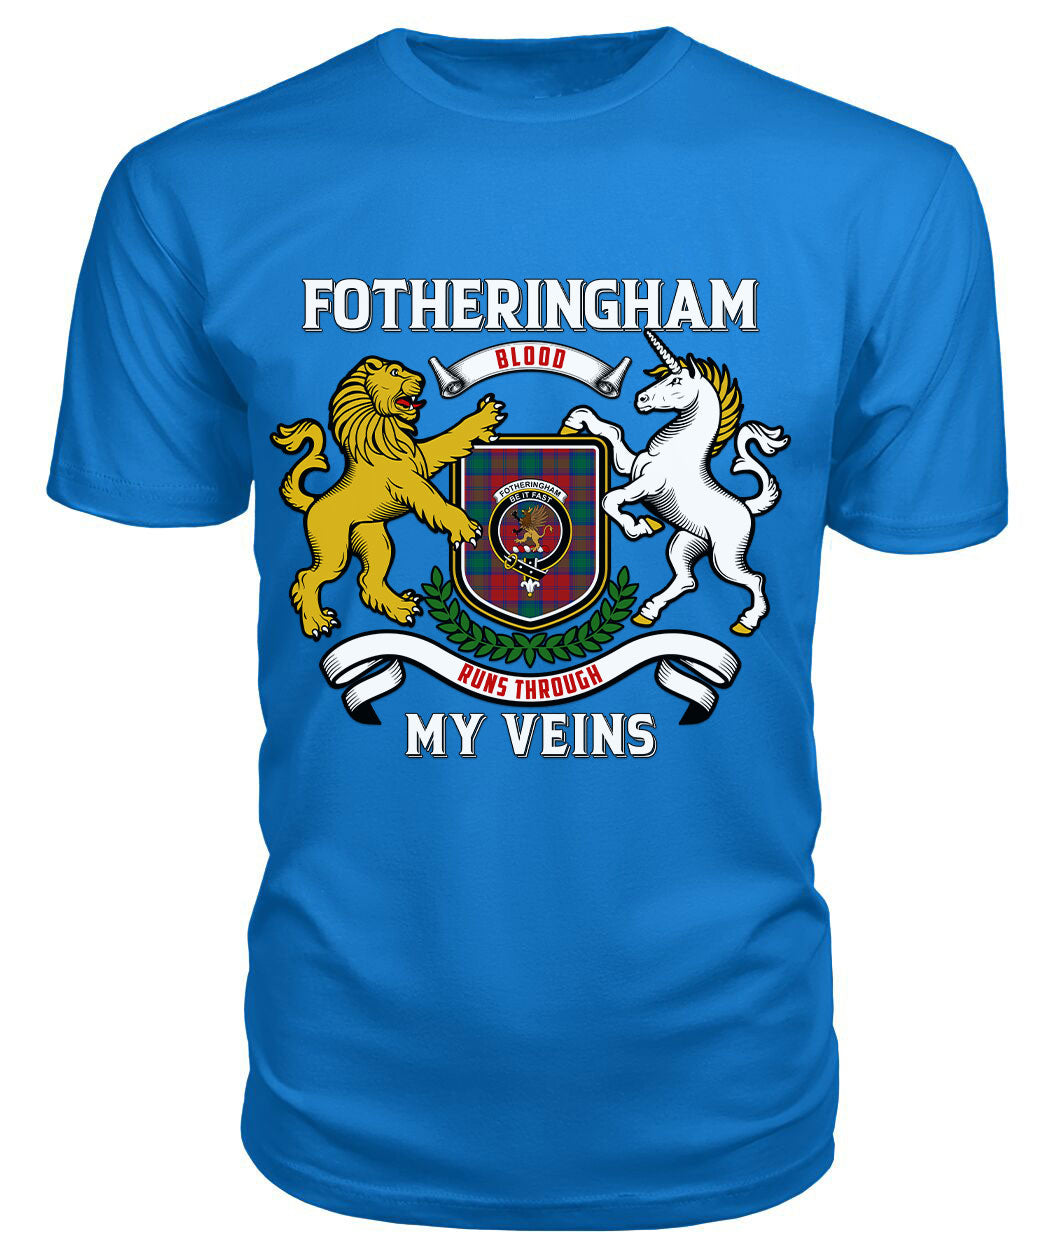 Fotheringham Tartan Crest 2D T-shirt - Blood Runs Through My Veins Style